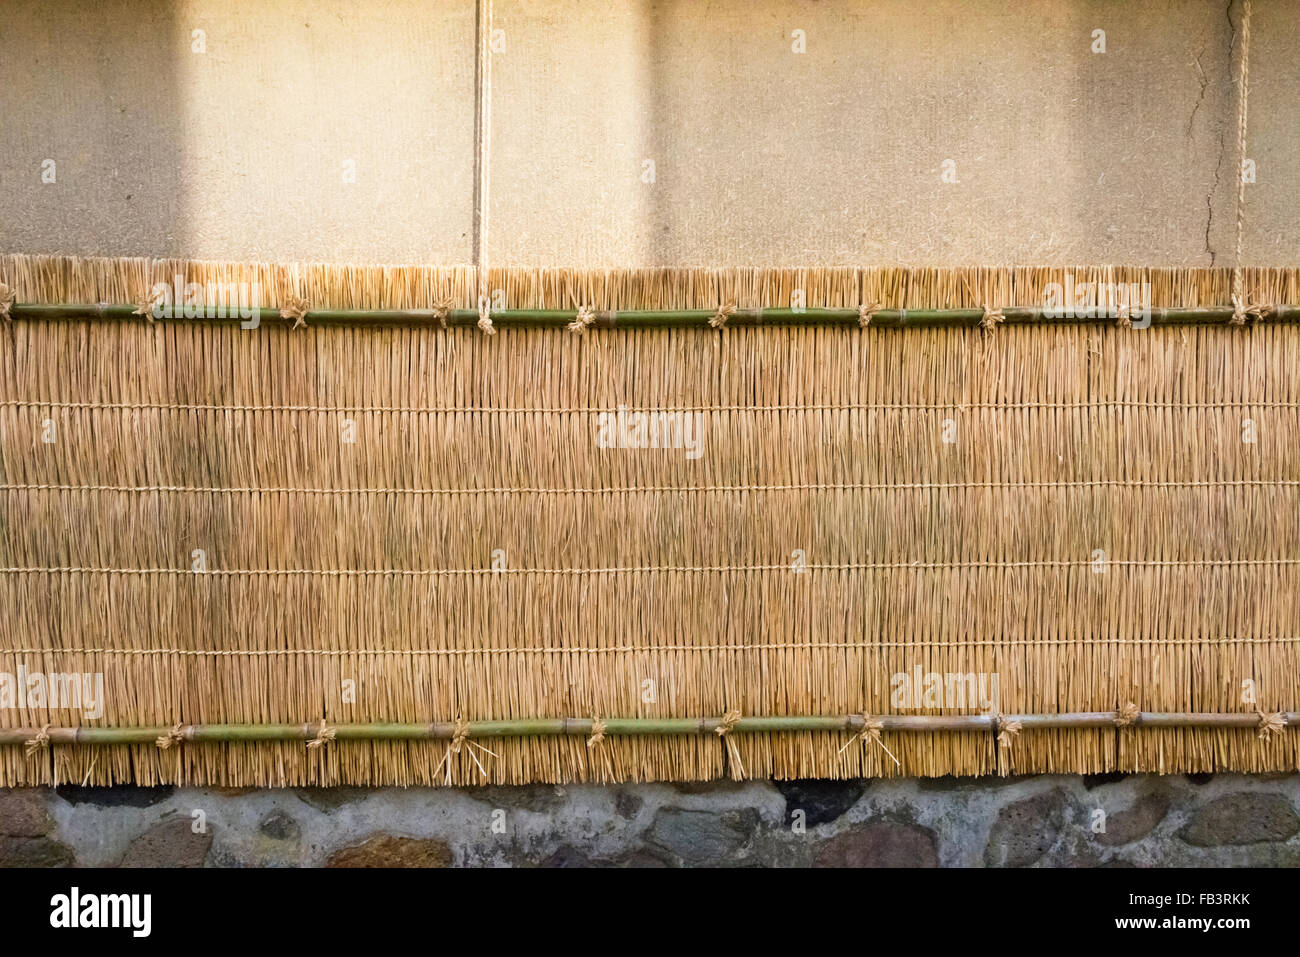 Samurai-Residenzen in Nagamachi Samurai District, Wand mit Strohmatte geschützt, während des Winters, Kanazawa, Ishikawa, Japan Stockfoto